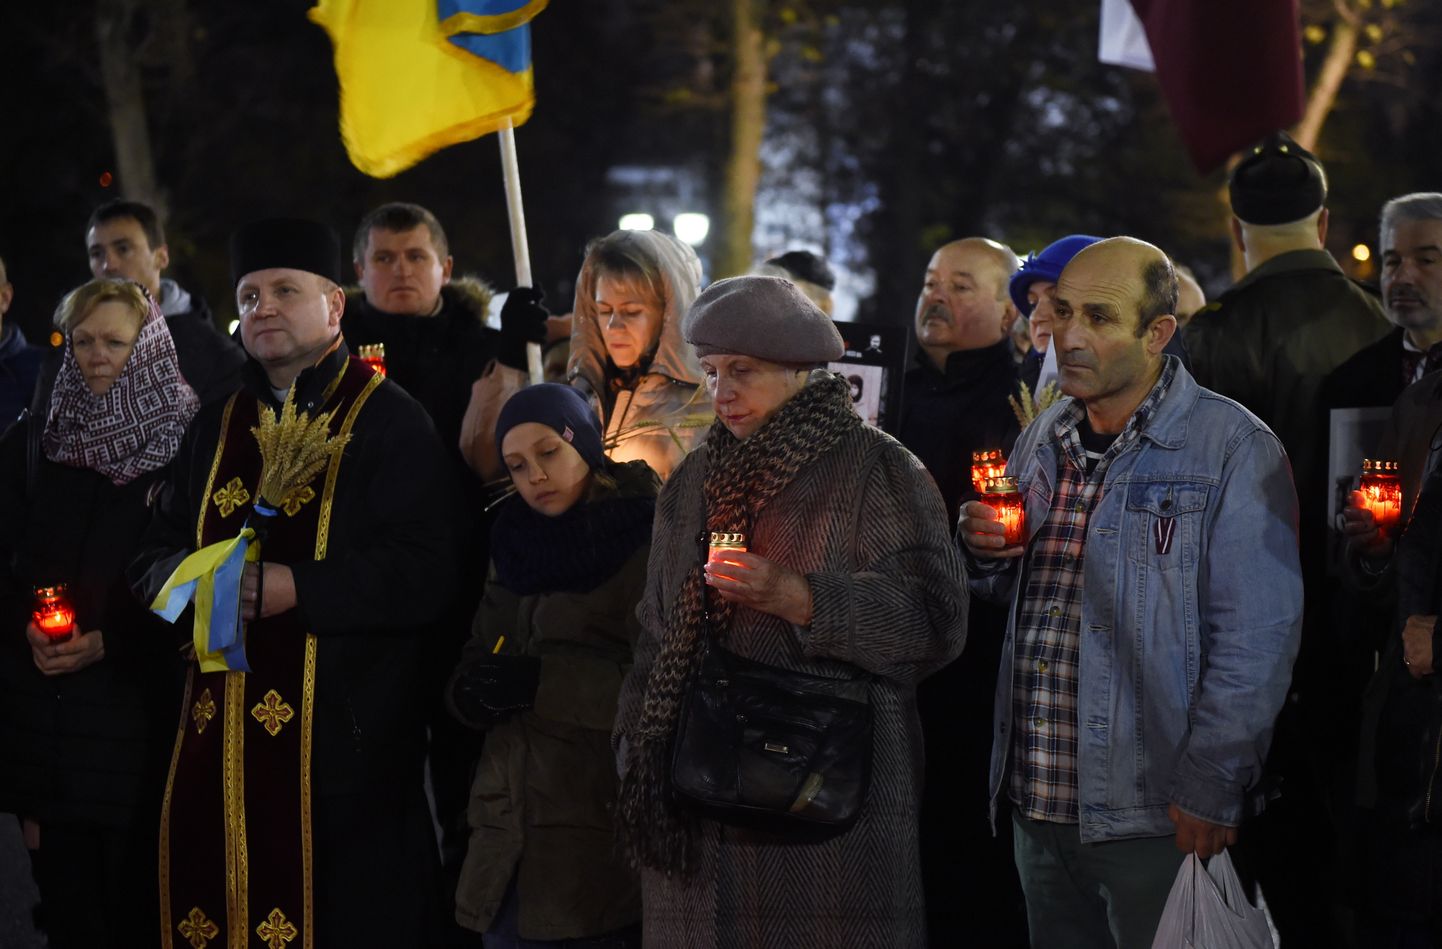 Starptautiska akcija "Aizdedzināsim piemiņas sveci" Ukrainas Golodomora jeb Lielā Bada upuru piemiņai pie Brīvības pieminekļa